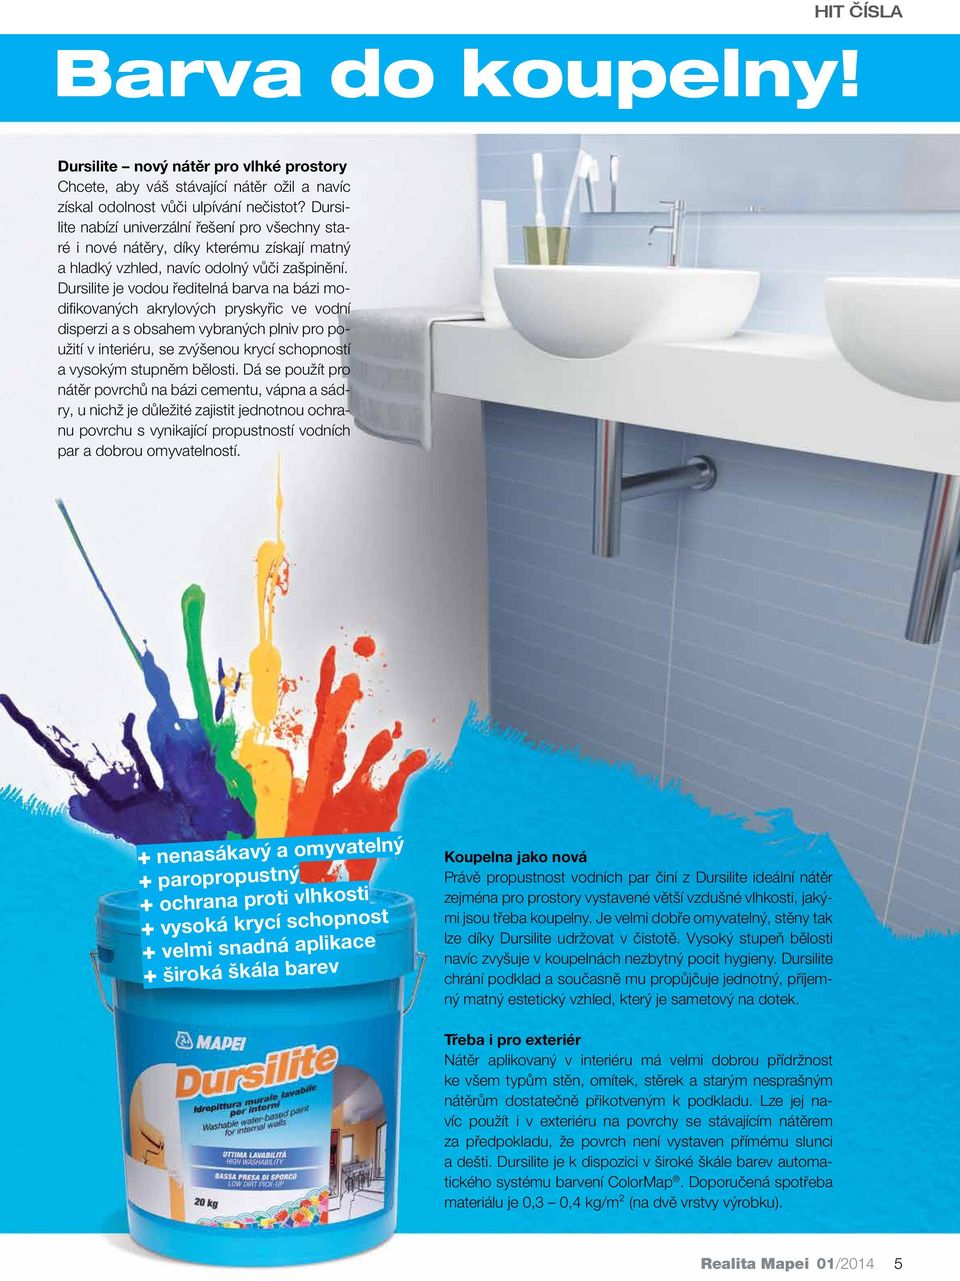 Dursilite je vodou ředitelná barva na bázi modifikovaných akrylových pryskyřic ve vodní disperzi a s obsahem vybraných plniv pro použití v interiéru, se zvýšenou krycí schopností a vysokým stupněm